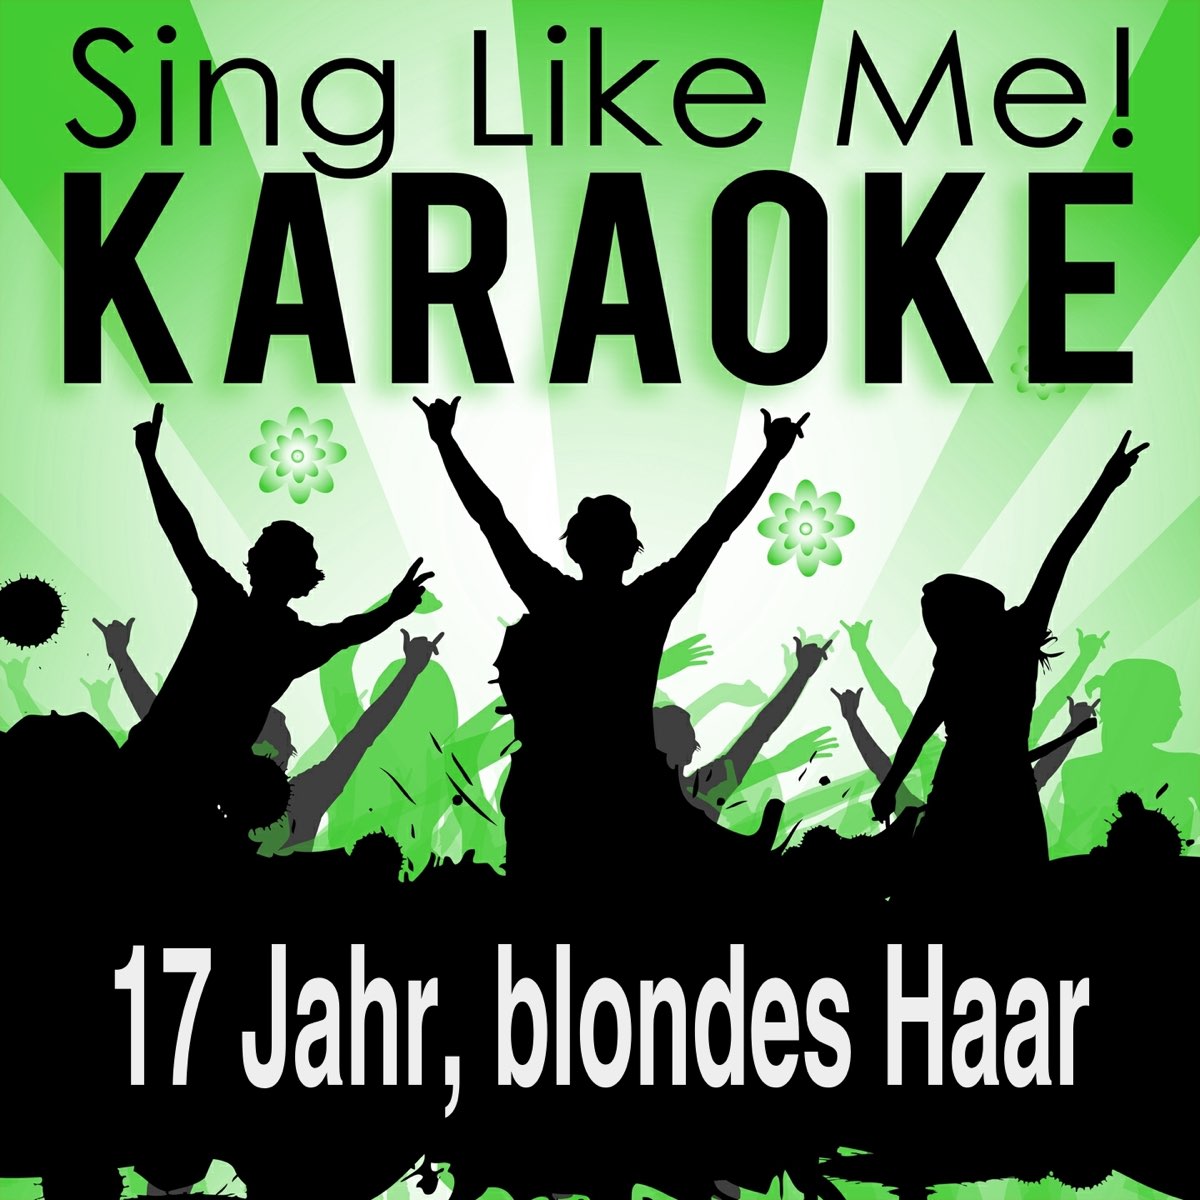 17 Jahr, blondes Haar (Karaoke Version) – Album von La-Le-Lu – Apple Music